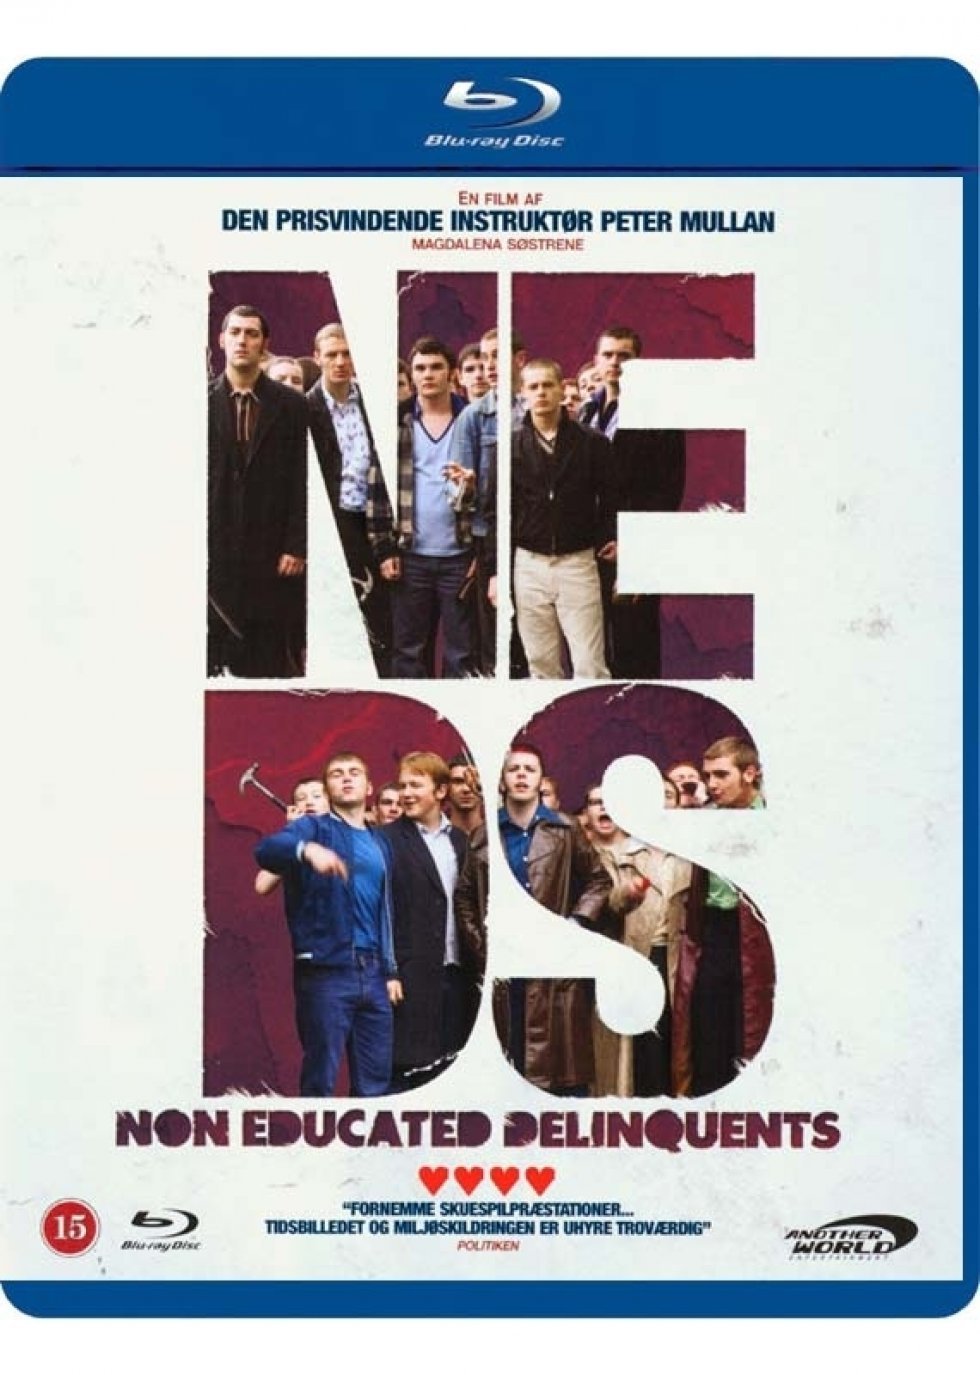 Another World Entertainment - Neds - På Blu-ray og DVD